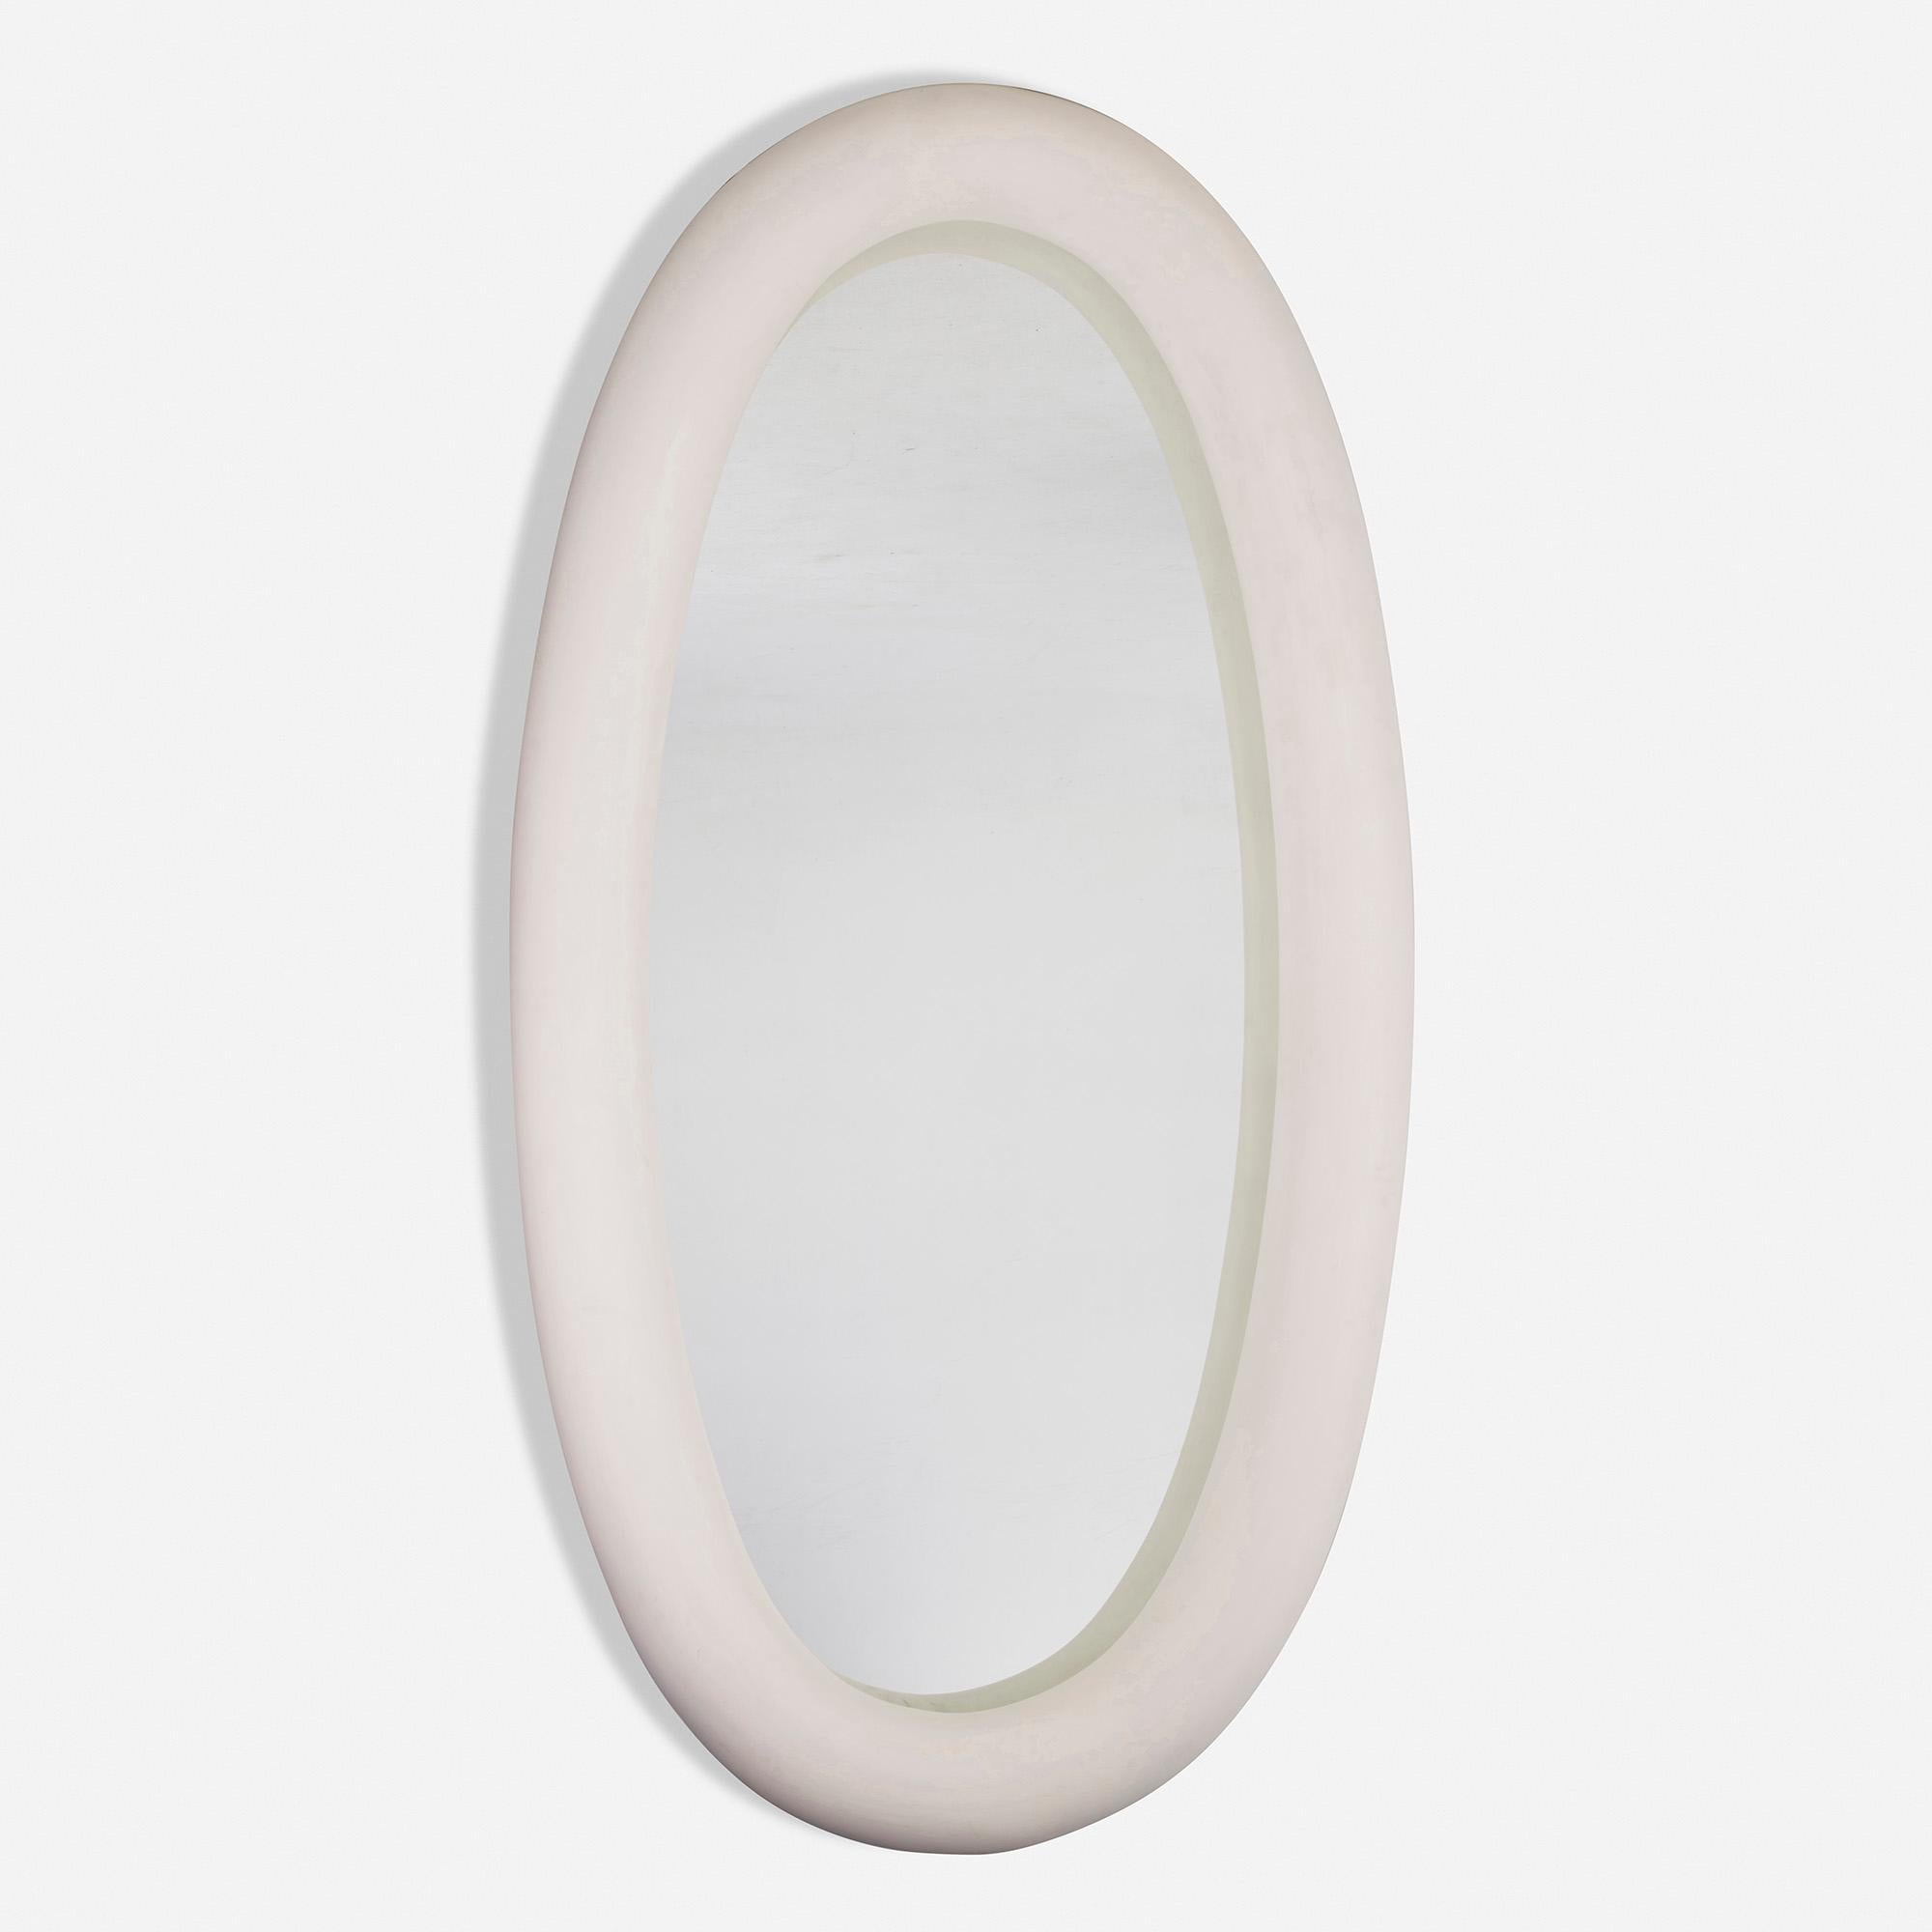 Provenienz: Dieser maßgefertigte Spiegel stammt aus einer von Jacques Grange entworfenen Einrichtung.

Hergestellt in: Frankreich, 1994-1996

Material: Gips über Harz, verspiegeltes Glas

Größe: 49,25 B × 7 T × 94,5 H in

Beschreibung: